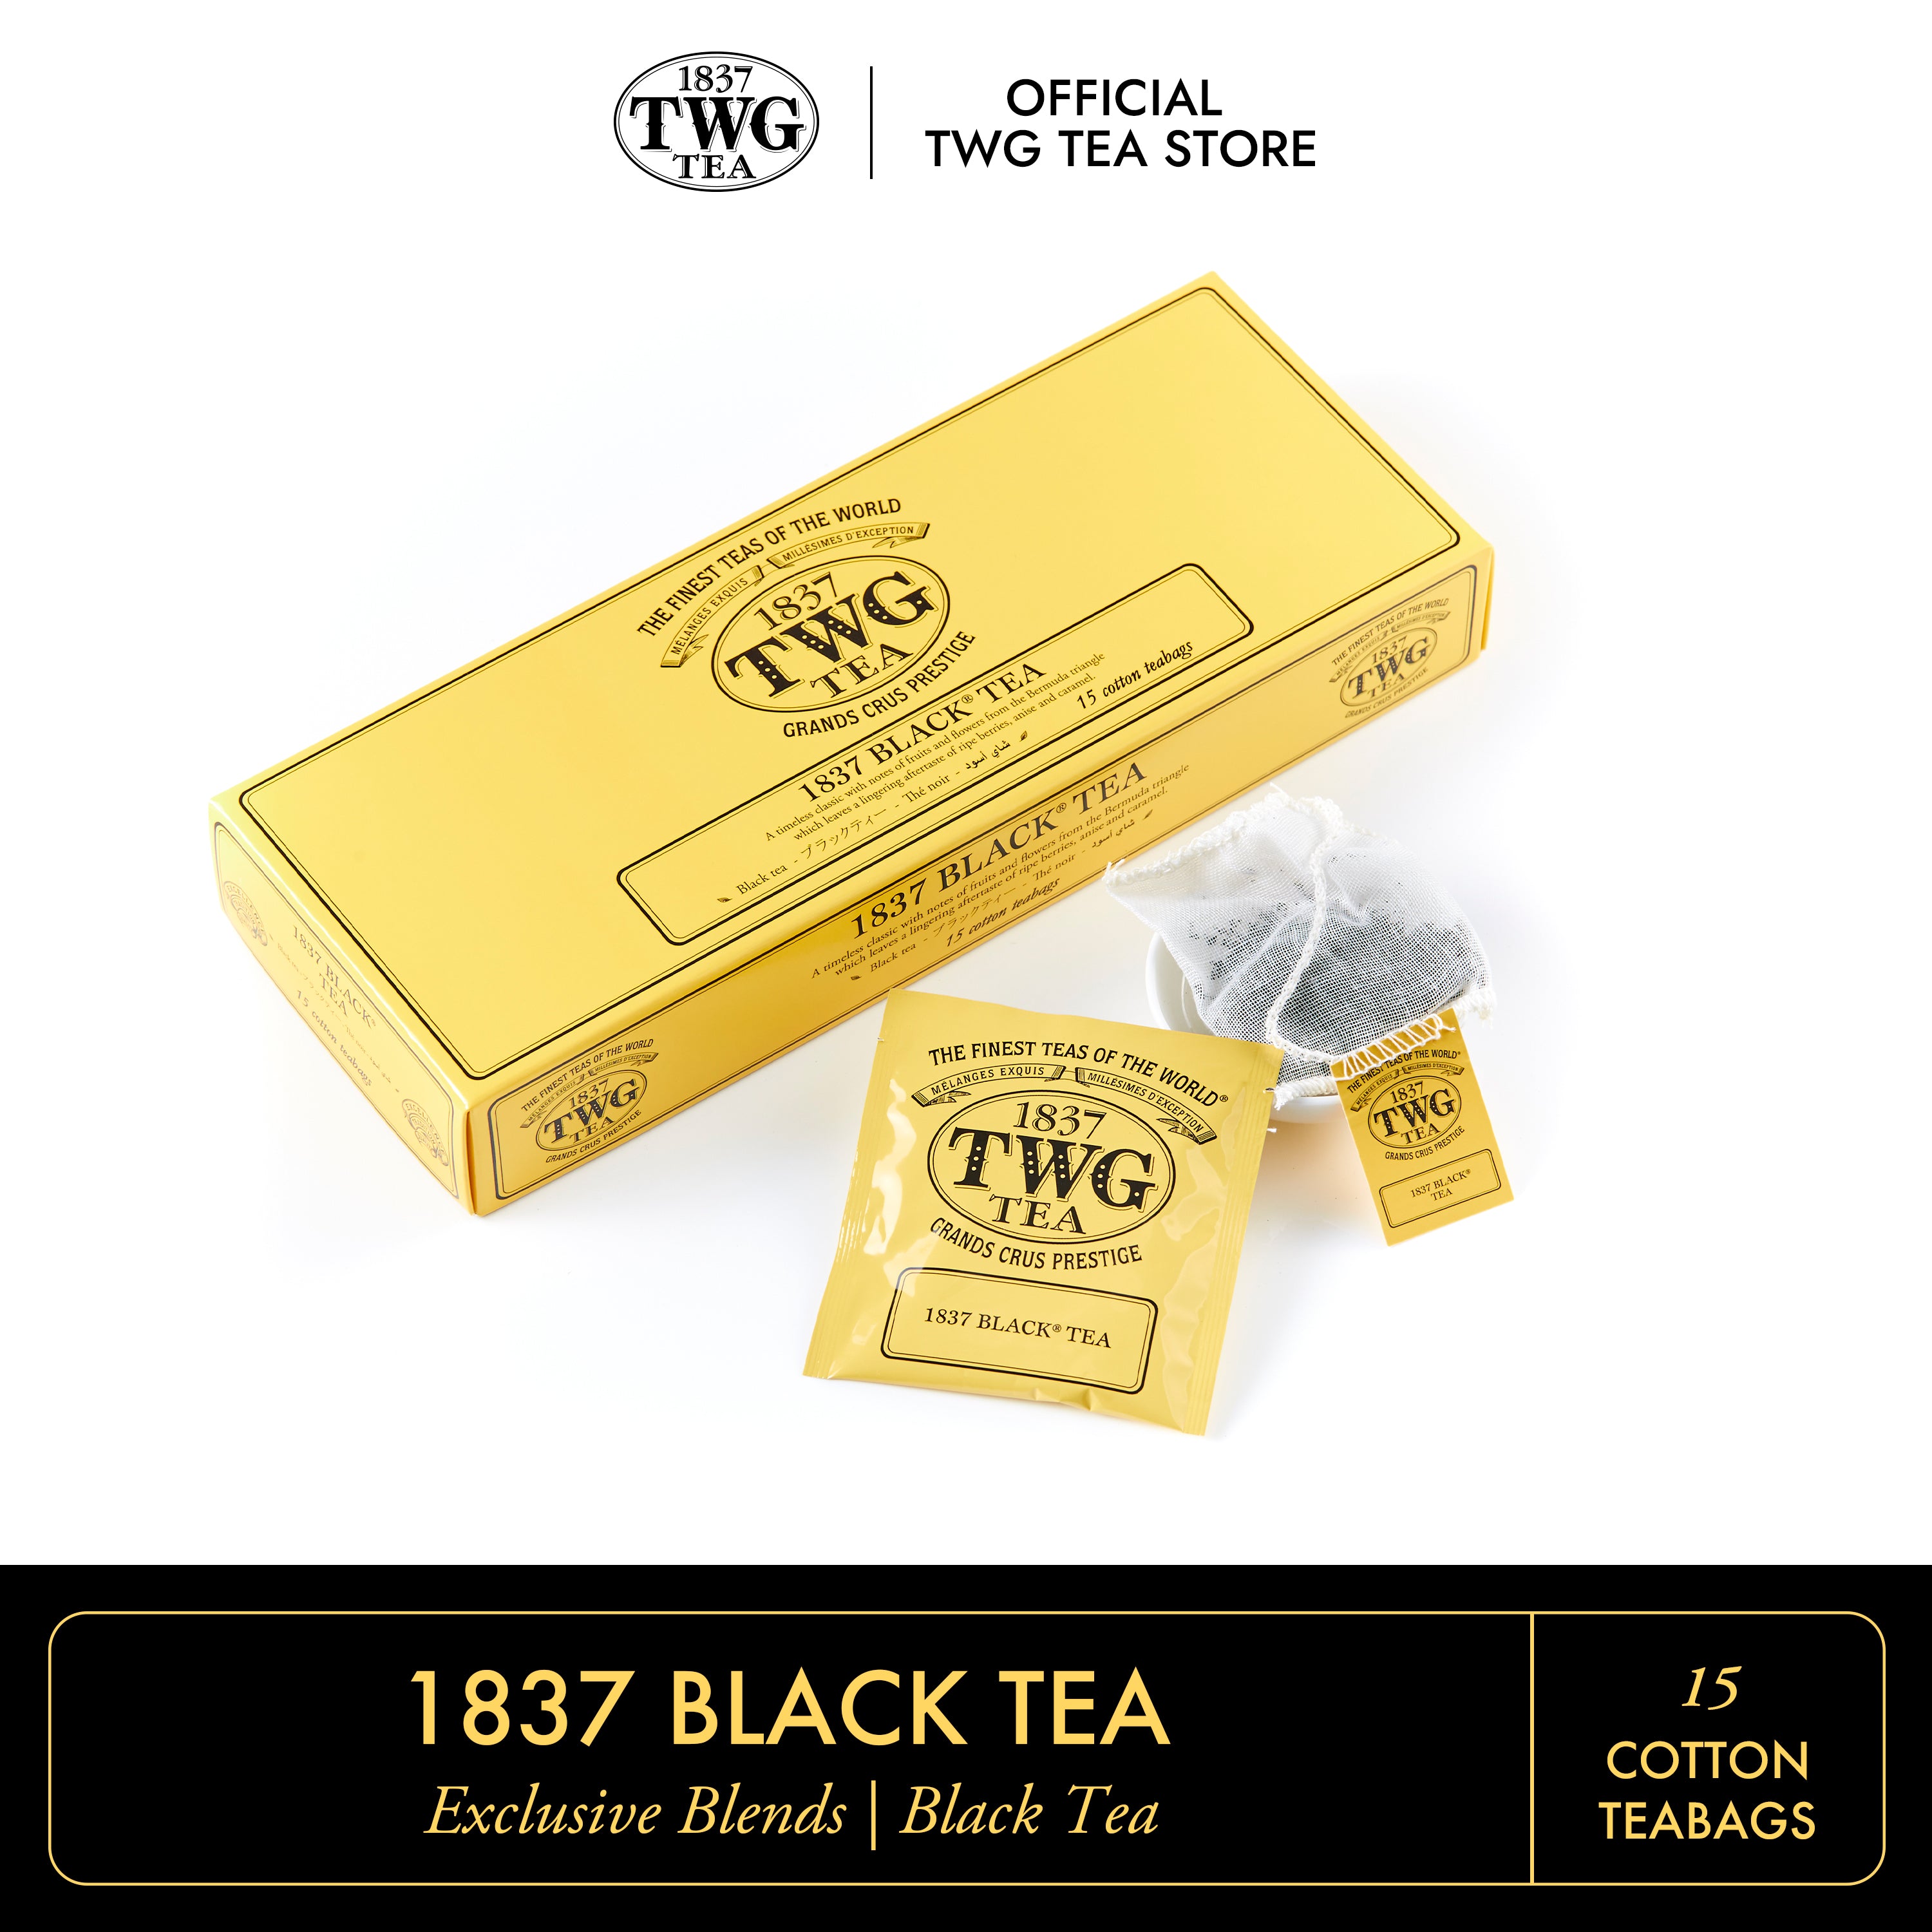 Black Tea, TWG